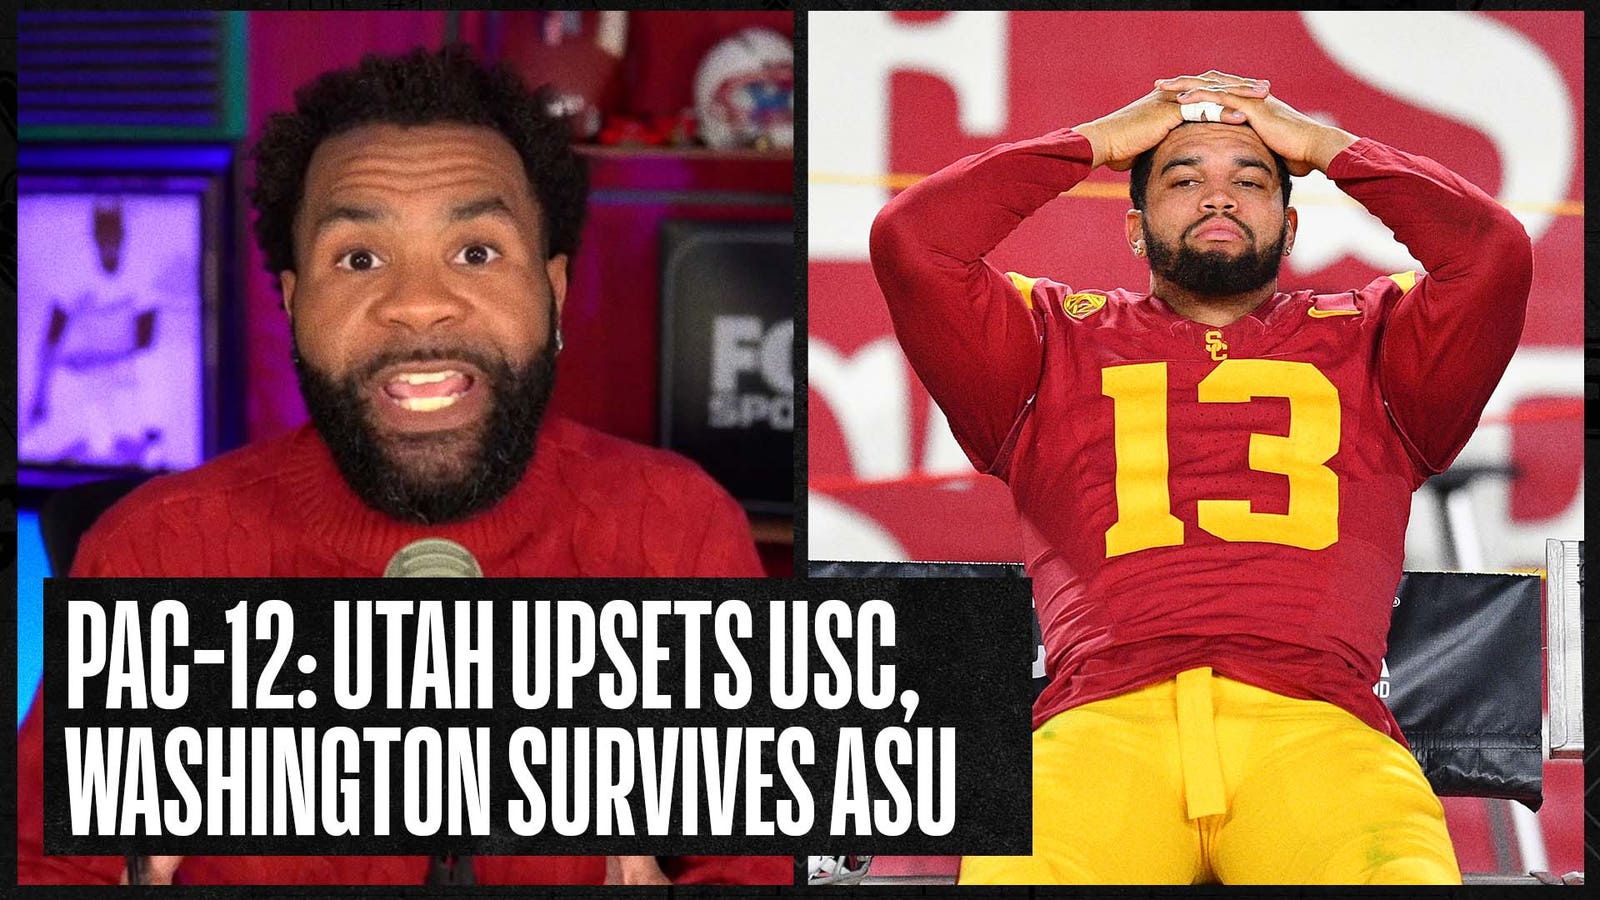 Pac-12 Week 8 recap: Utah upsets USC, Washington survives ASU